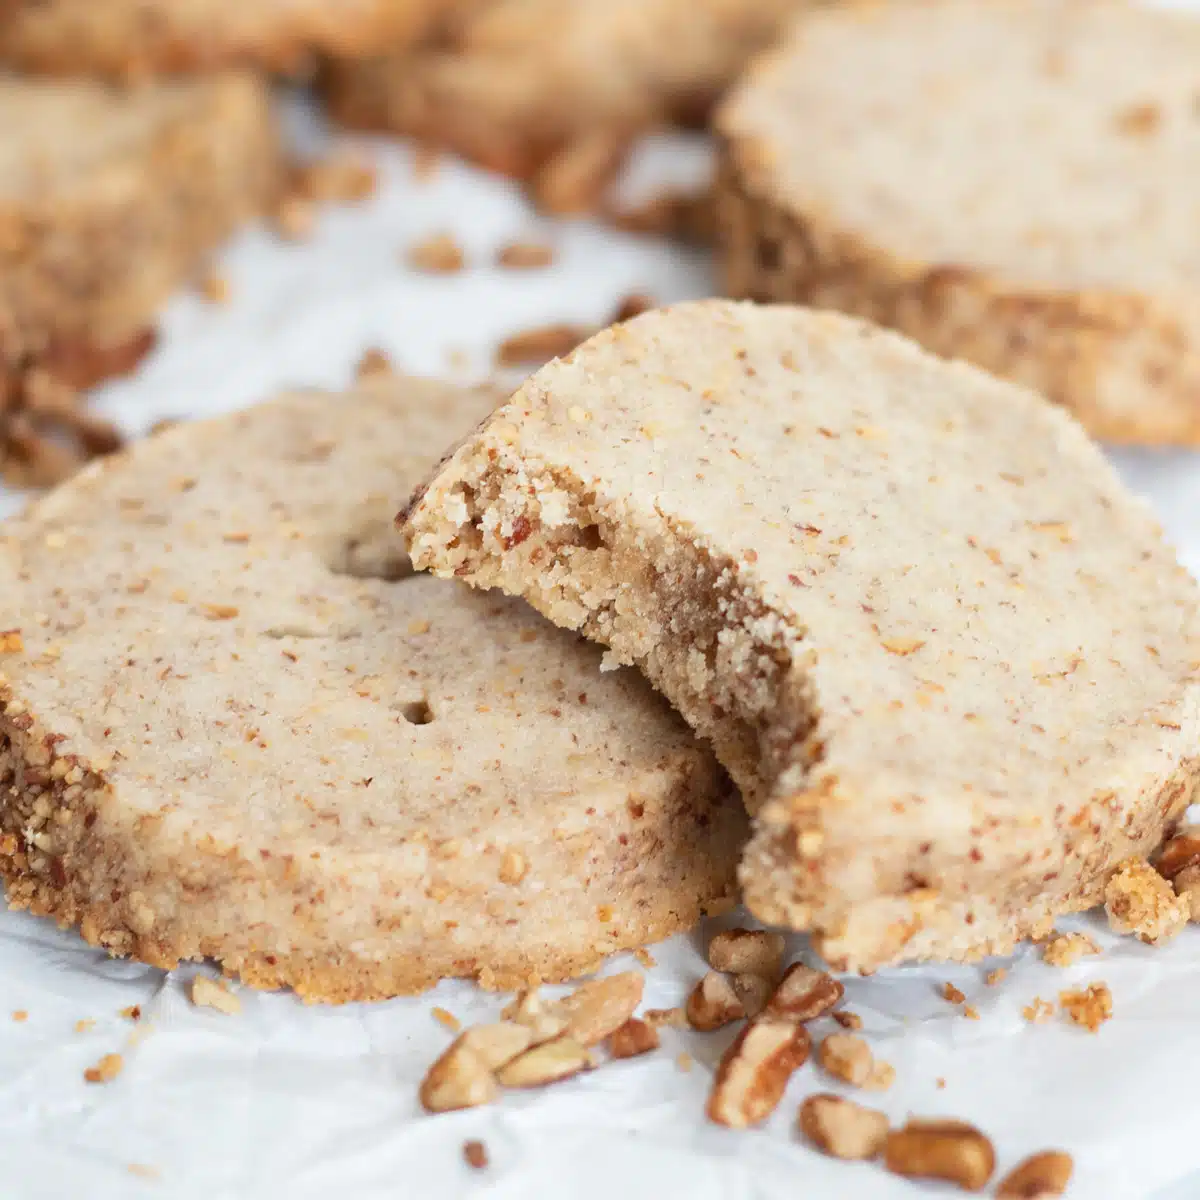 Meilleure recette de biscuits sablés aux pacanes qui sont parfaitement tendres avec des pacanes rôties écrasées dans un biscuit sablé.